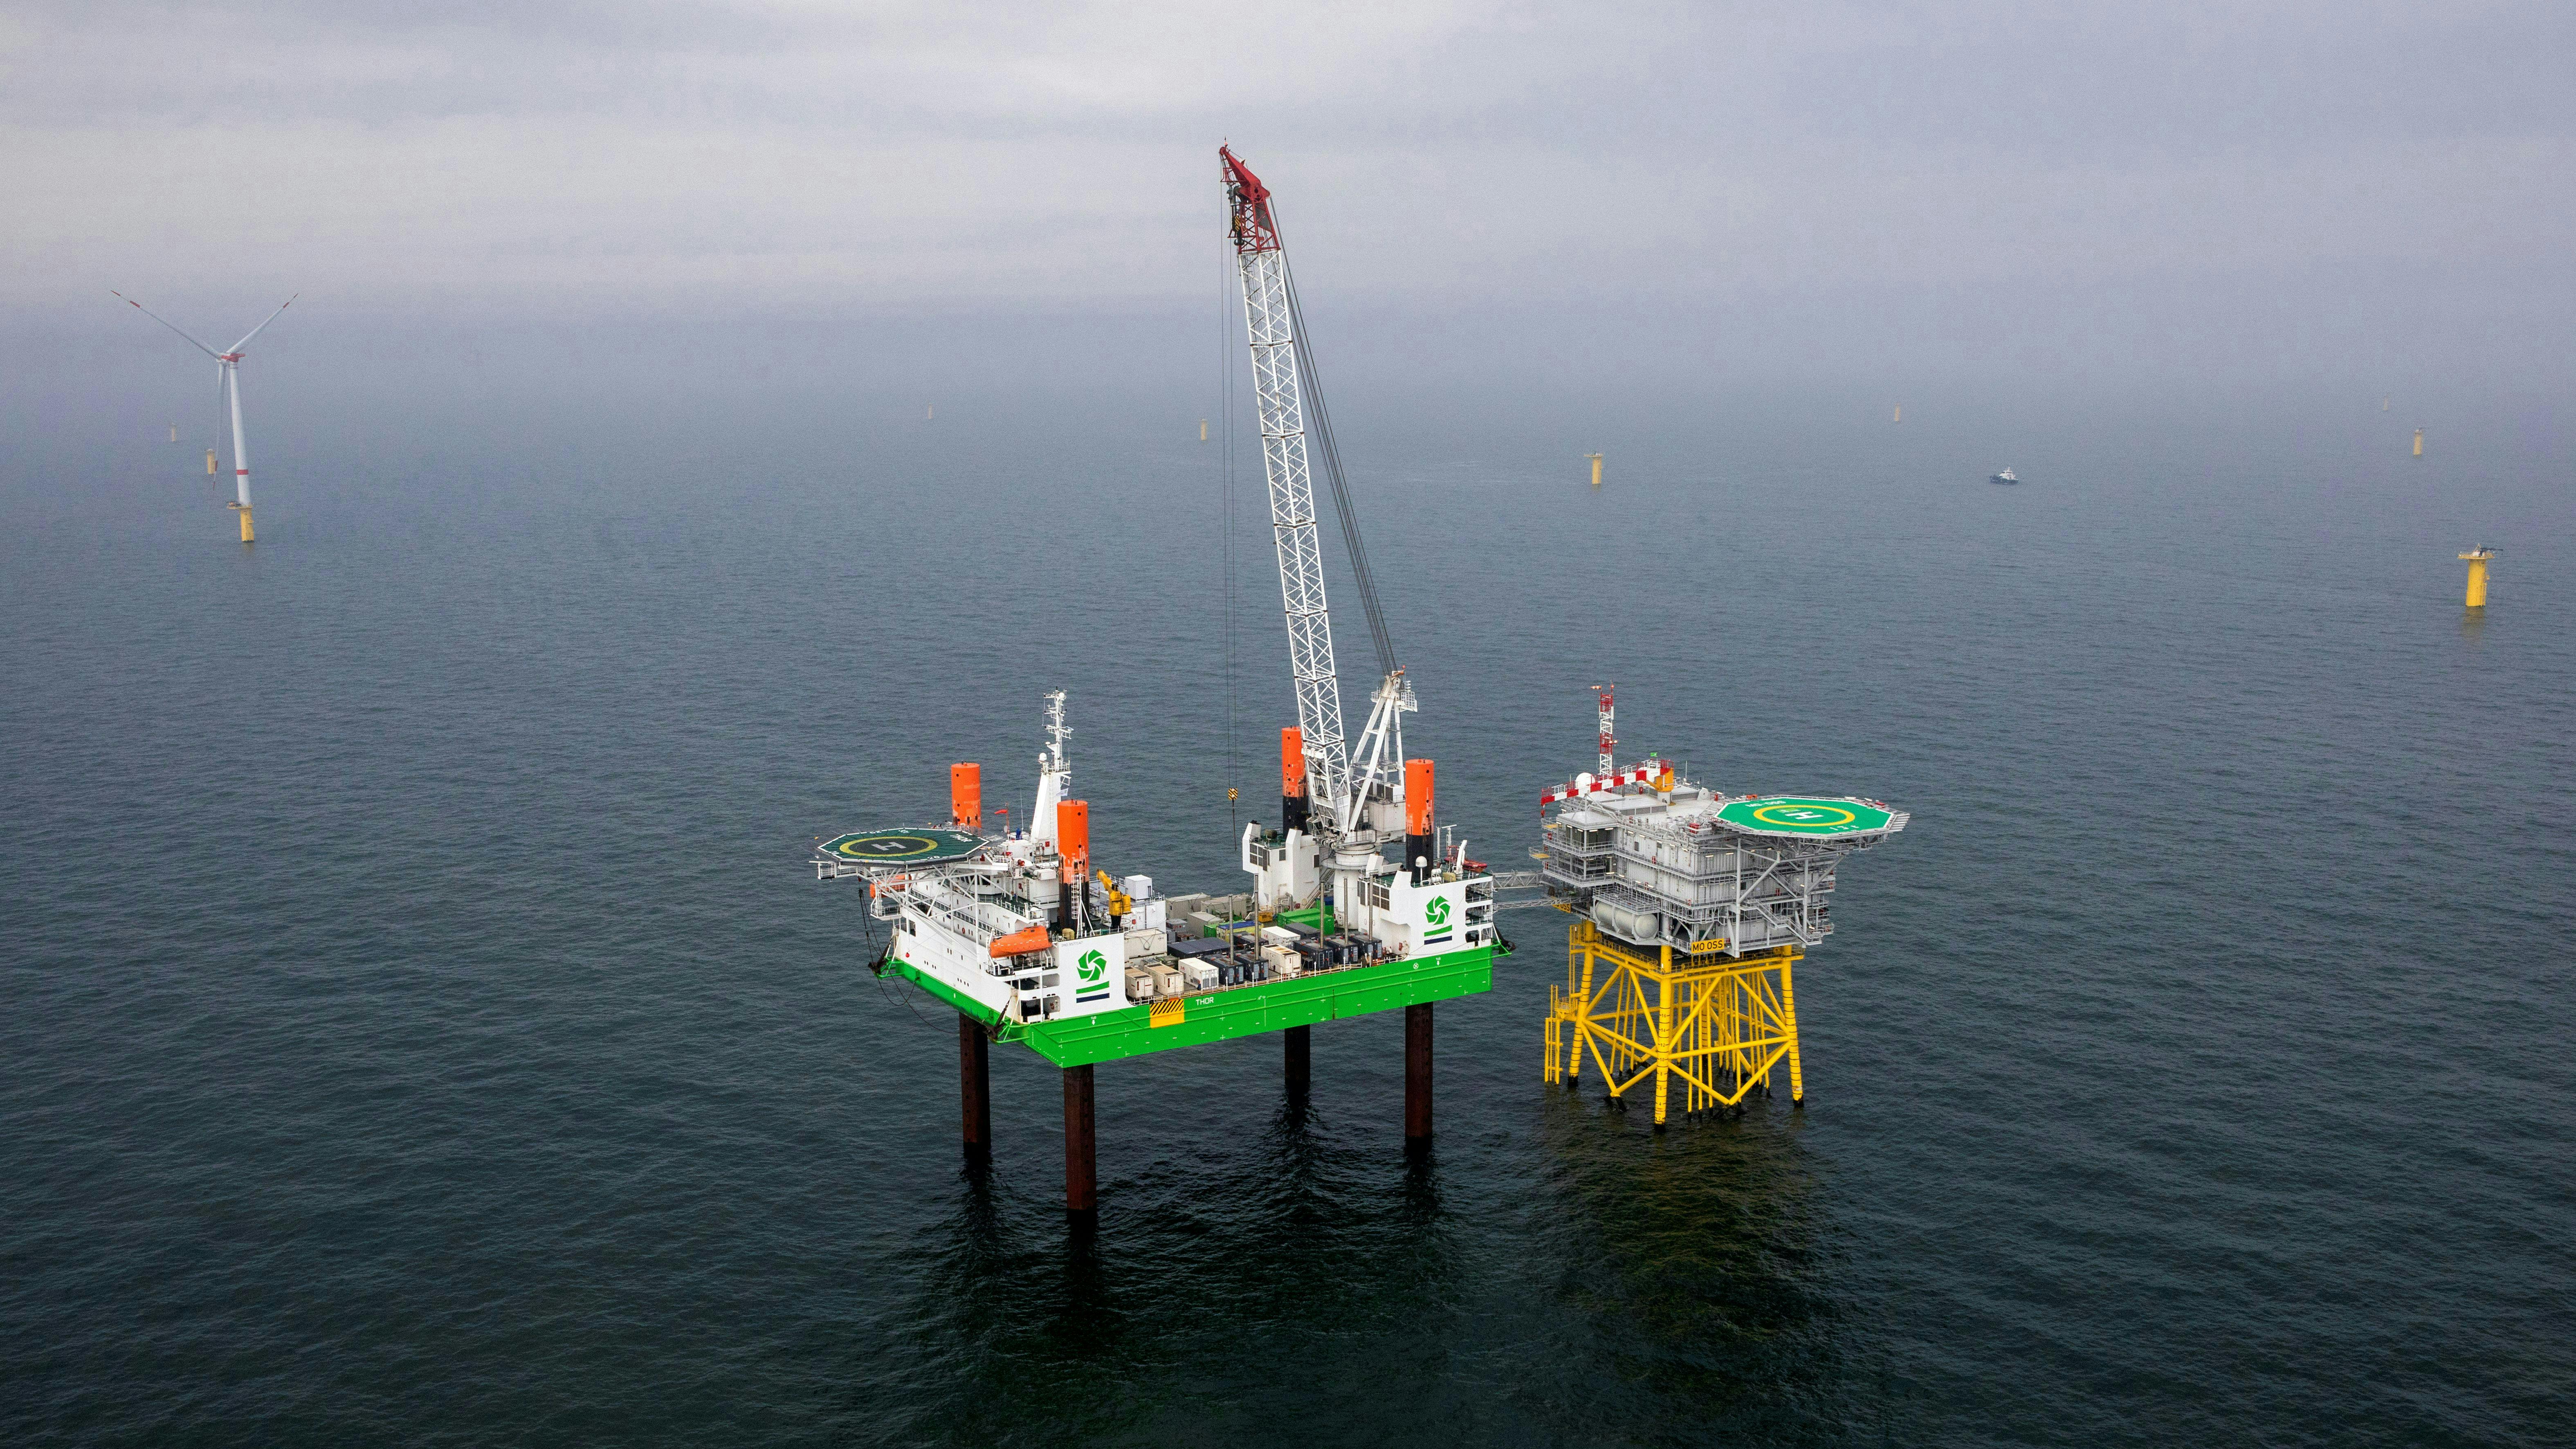 Merkur offshore wind project near Germany